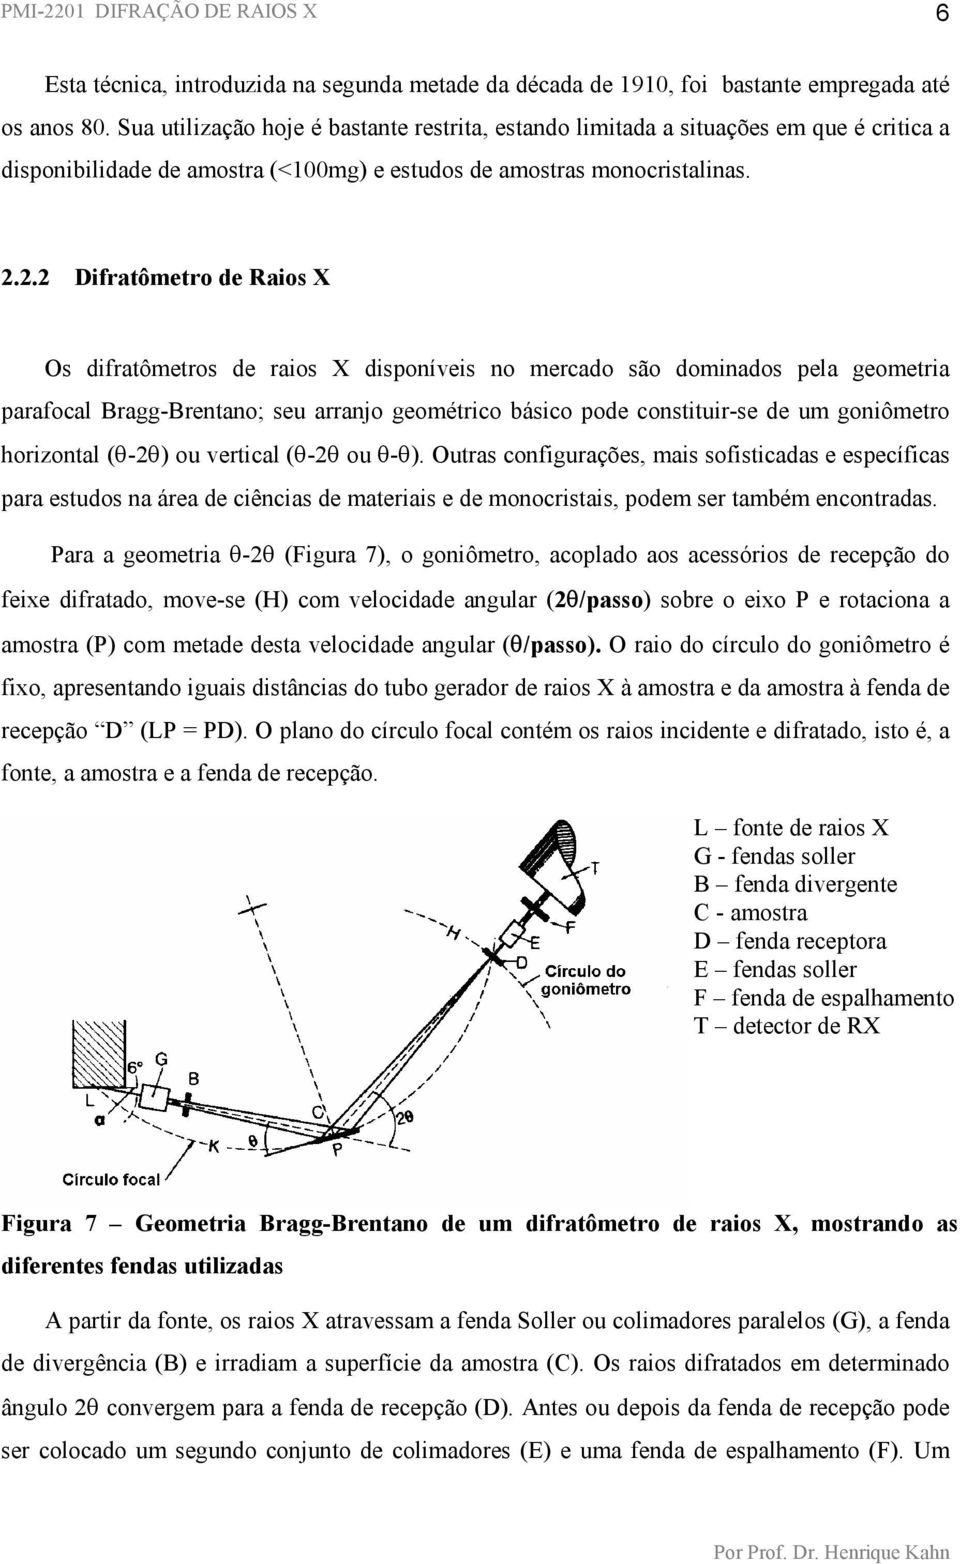 2.2 Difratômetro de Raios X Os difratômetros de raios X disponíveis no mercado são dominados pela geometria parafocal Bragg-Brentano; seu arranjo geométrico básico pode constituir-se de um goniômetro